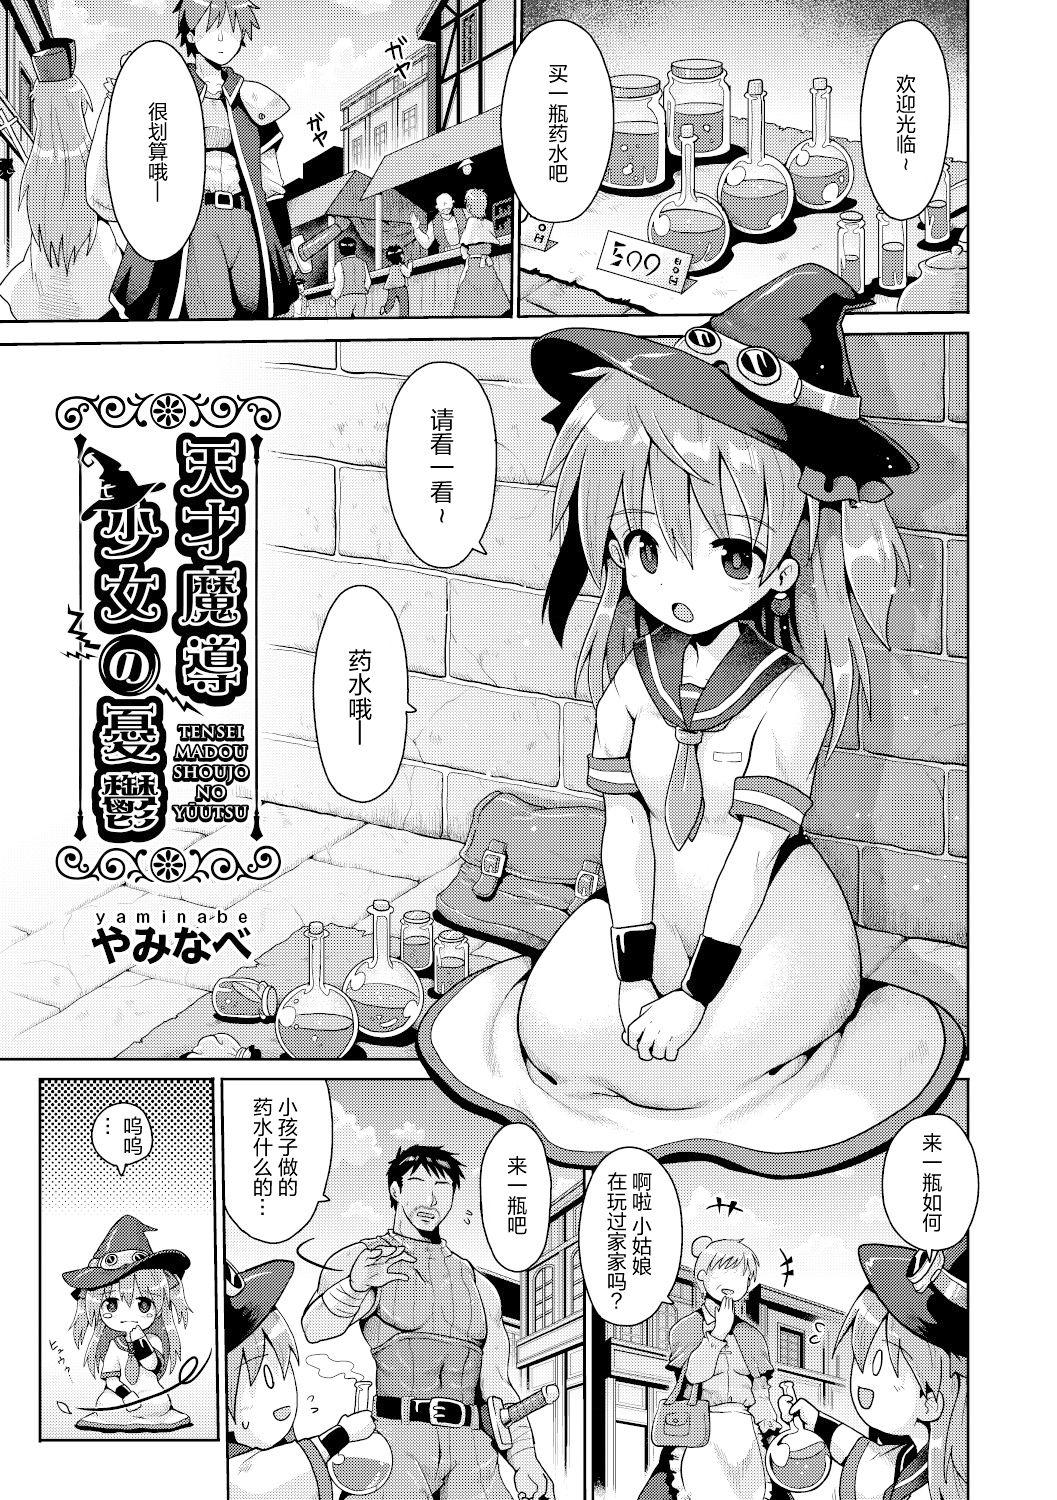 Spying Tensai mado shojo no yuutsu Rub - Page 2